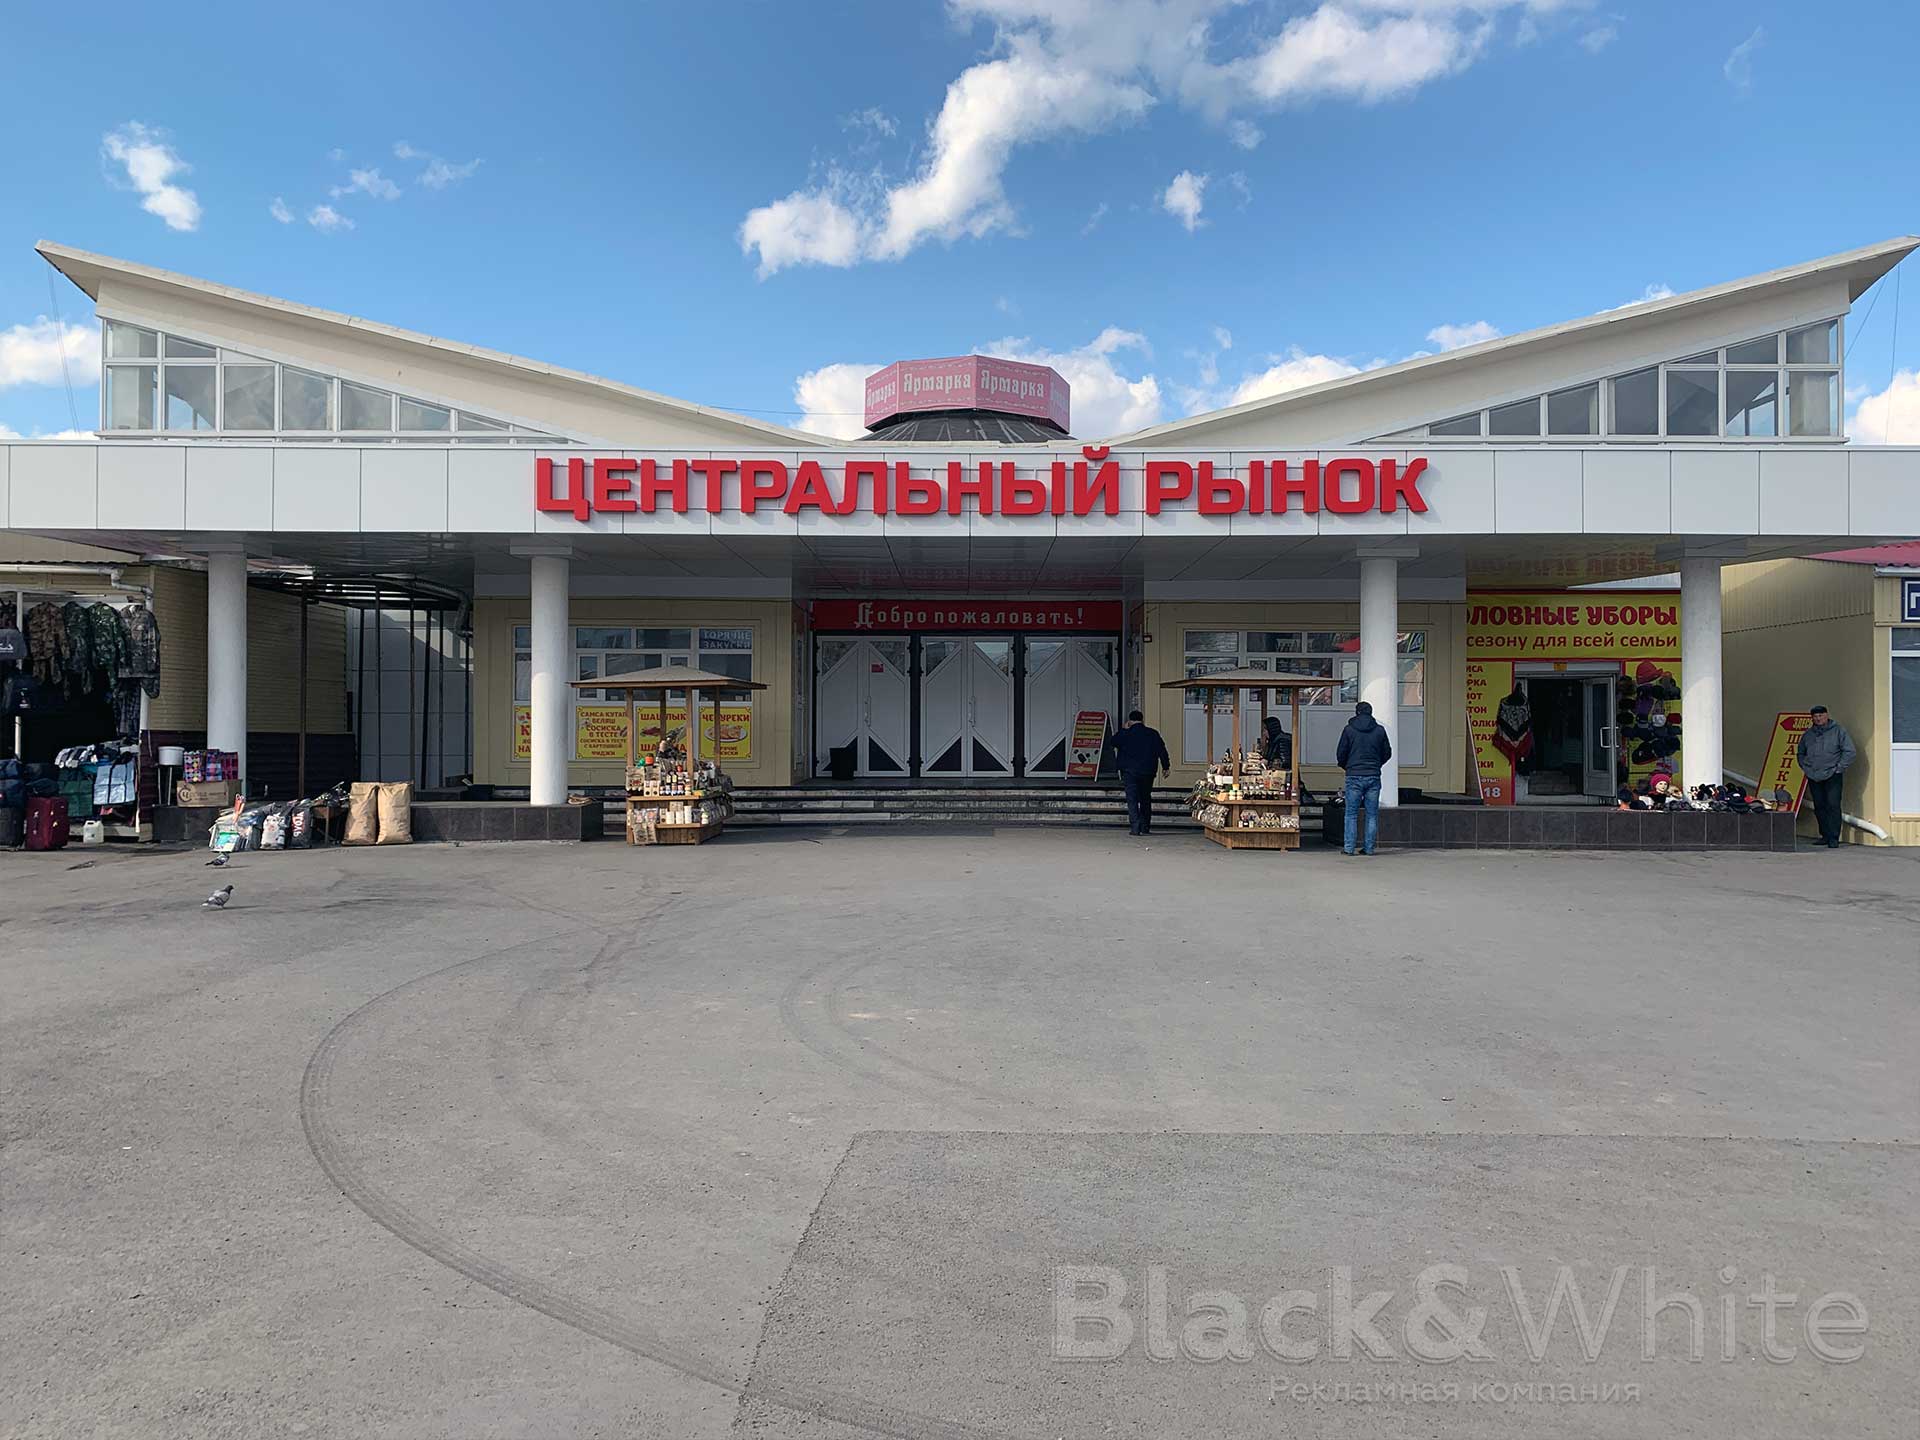 вывеска-для-центрального-рынка-со-световыми-объёмными-буквами-на-металлокаркасе-в-Красноярске.jpg